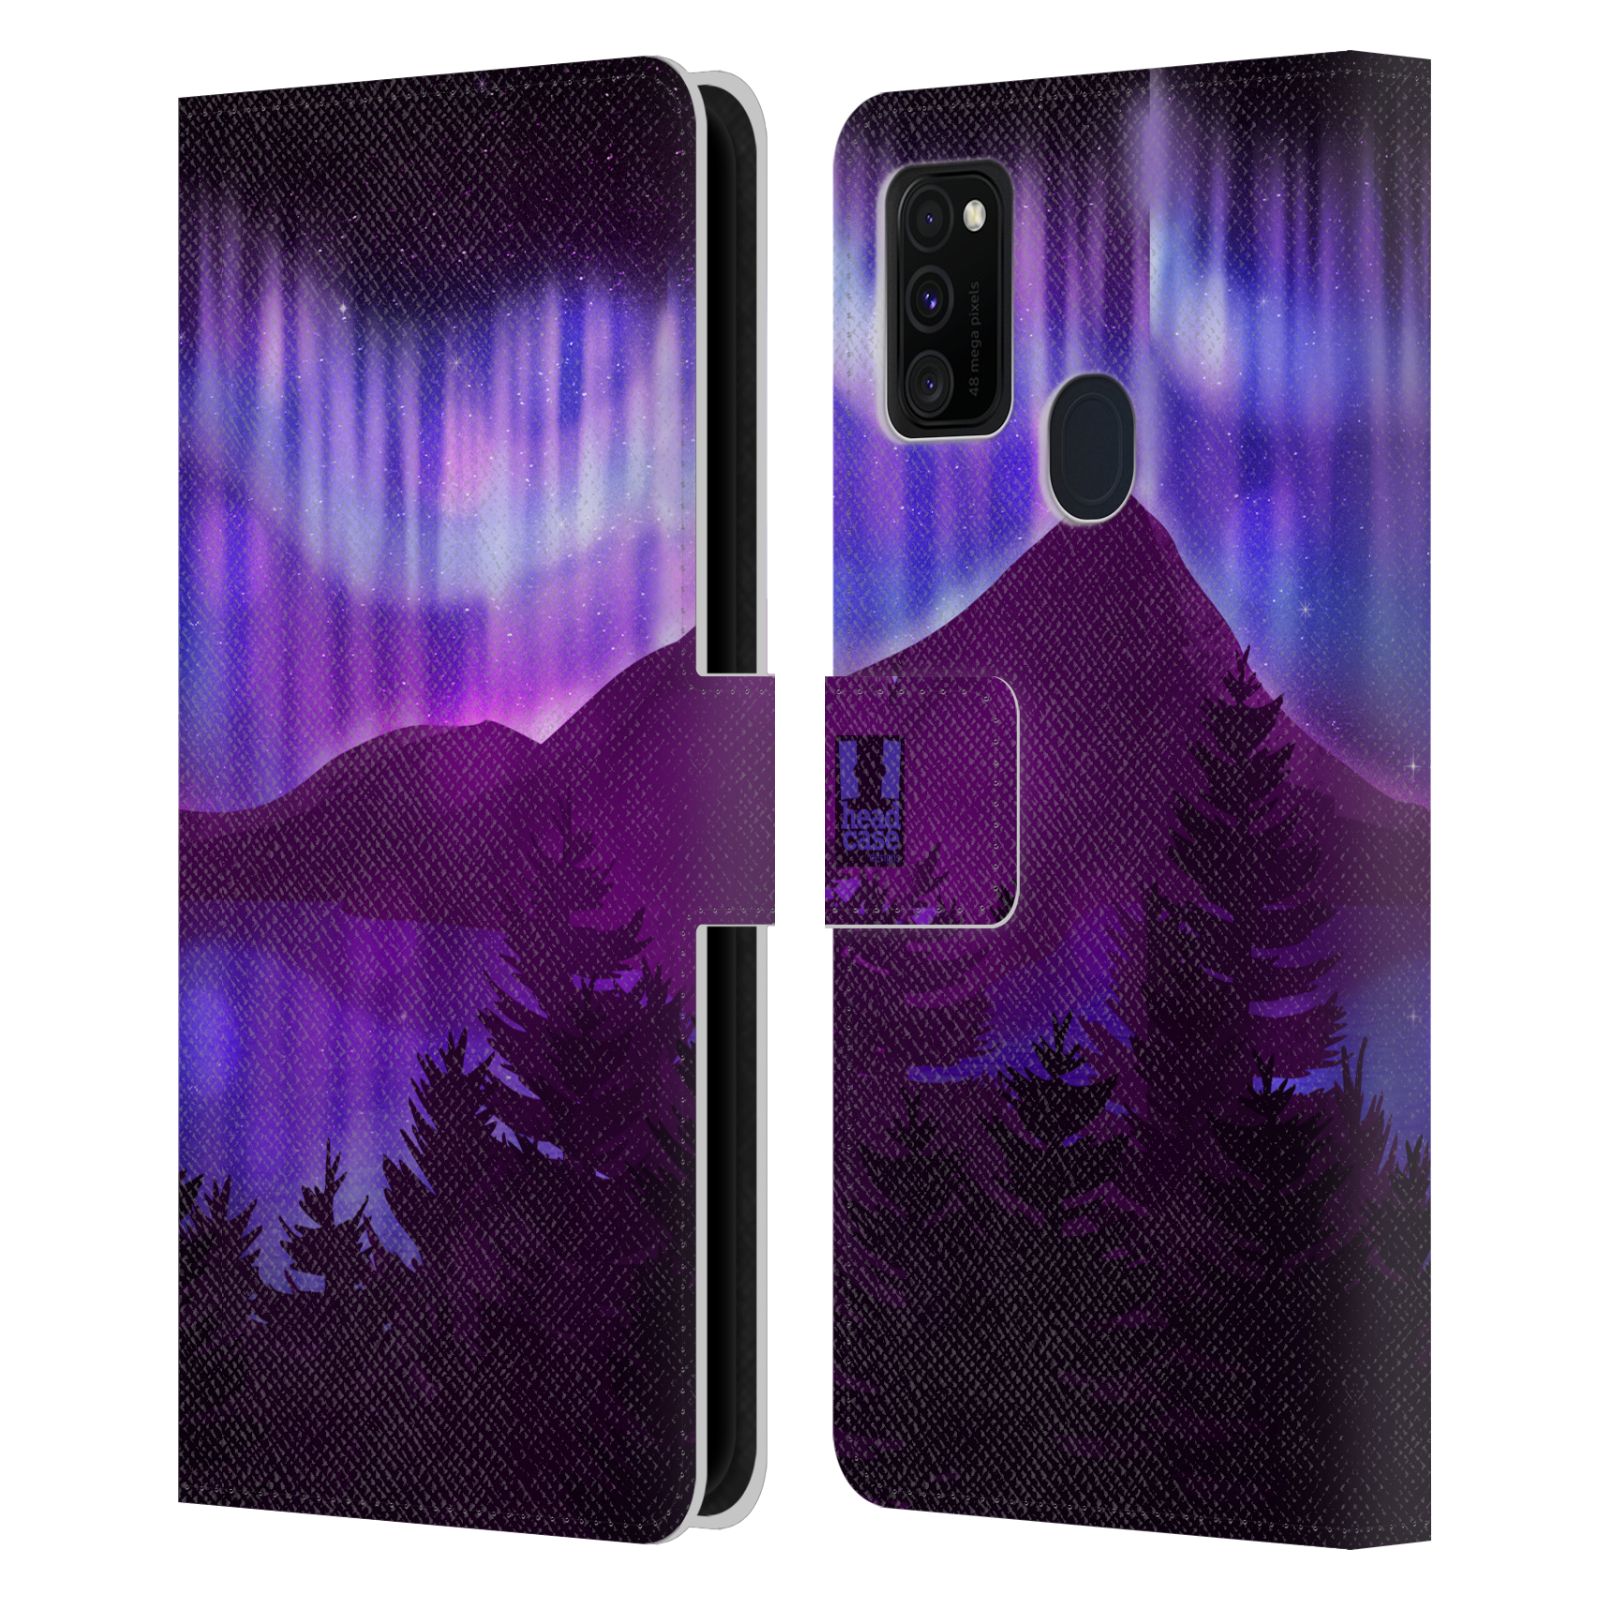 Pouzdro na mobil Samsung Galaxy M21 - HEAD CASE - Hory a lesy fialový odstín